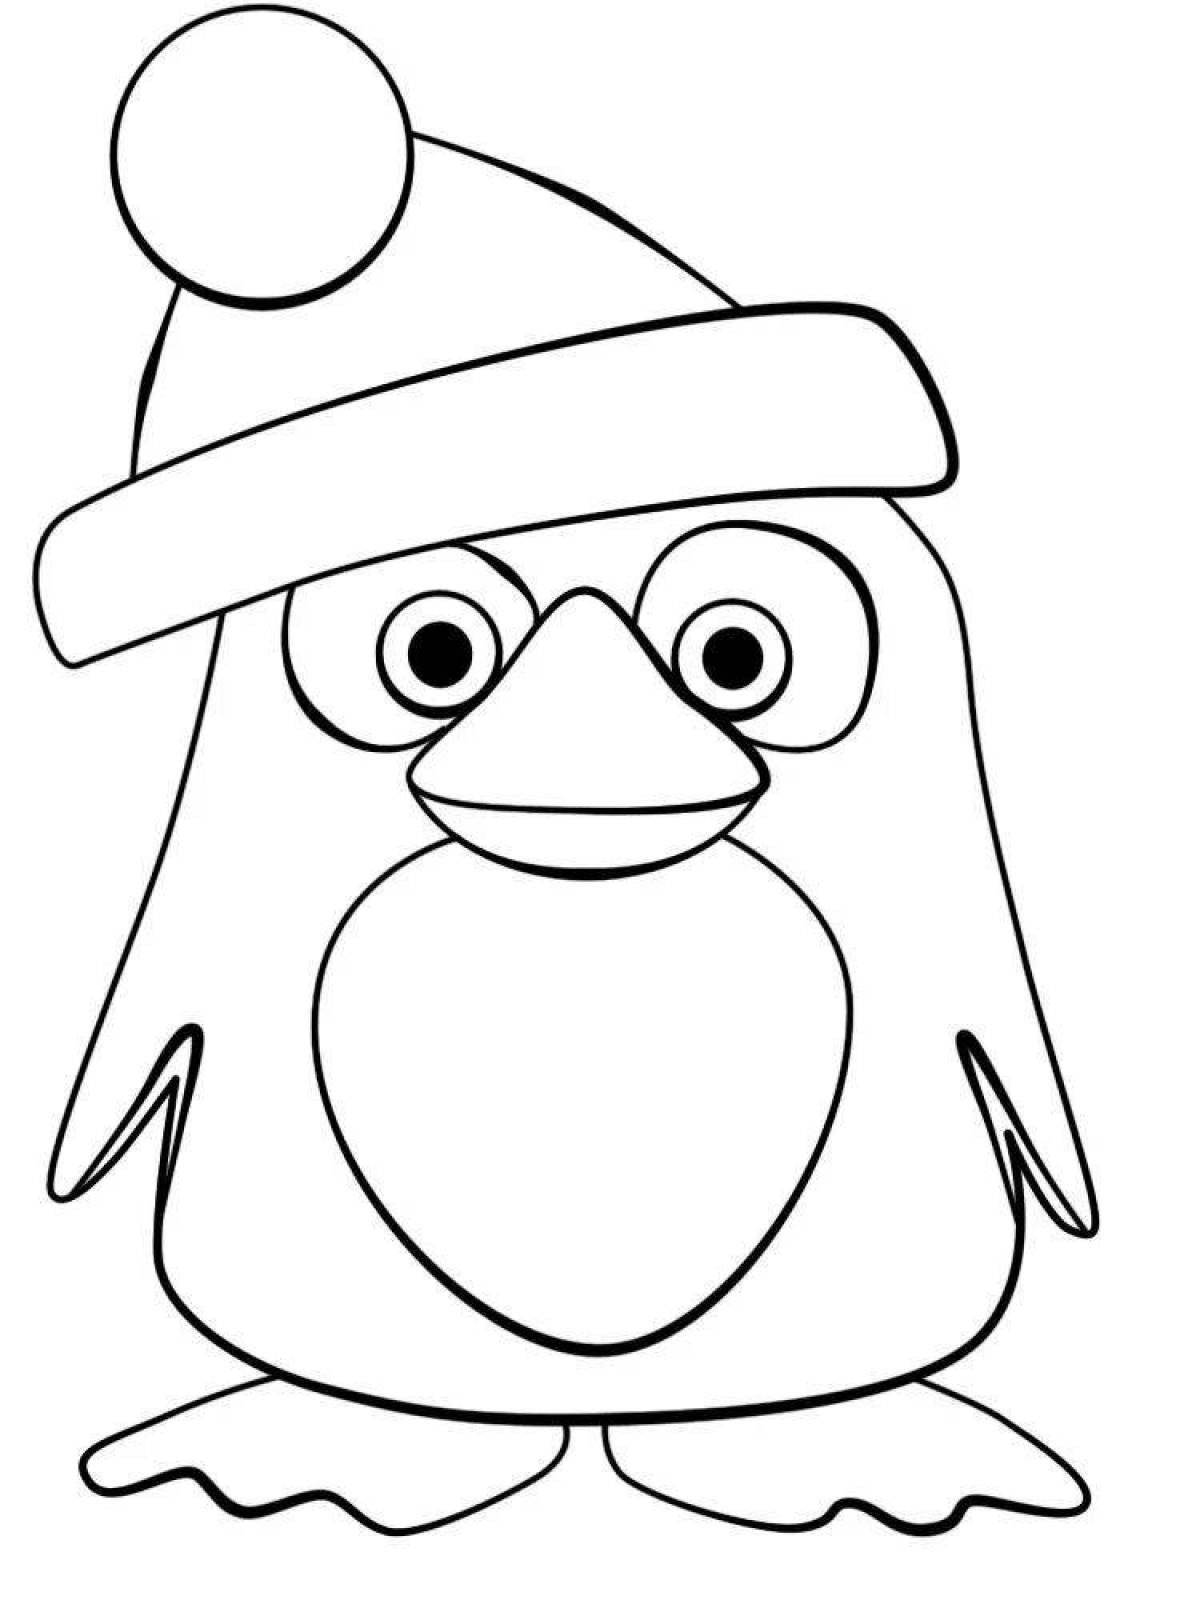 Забавная раскраска пингвинов для детей